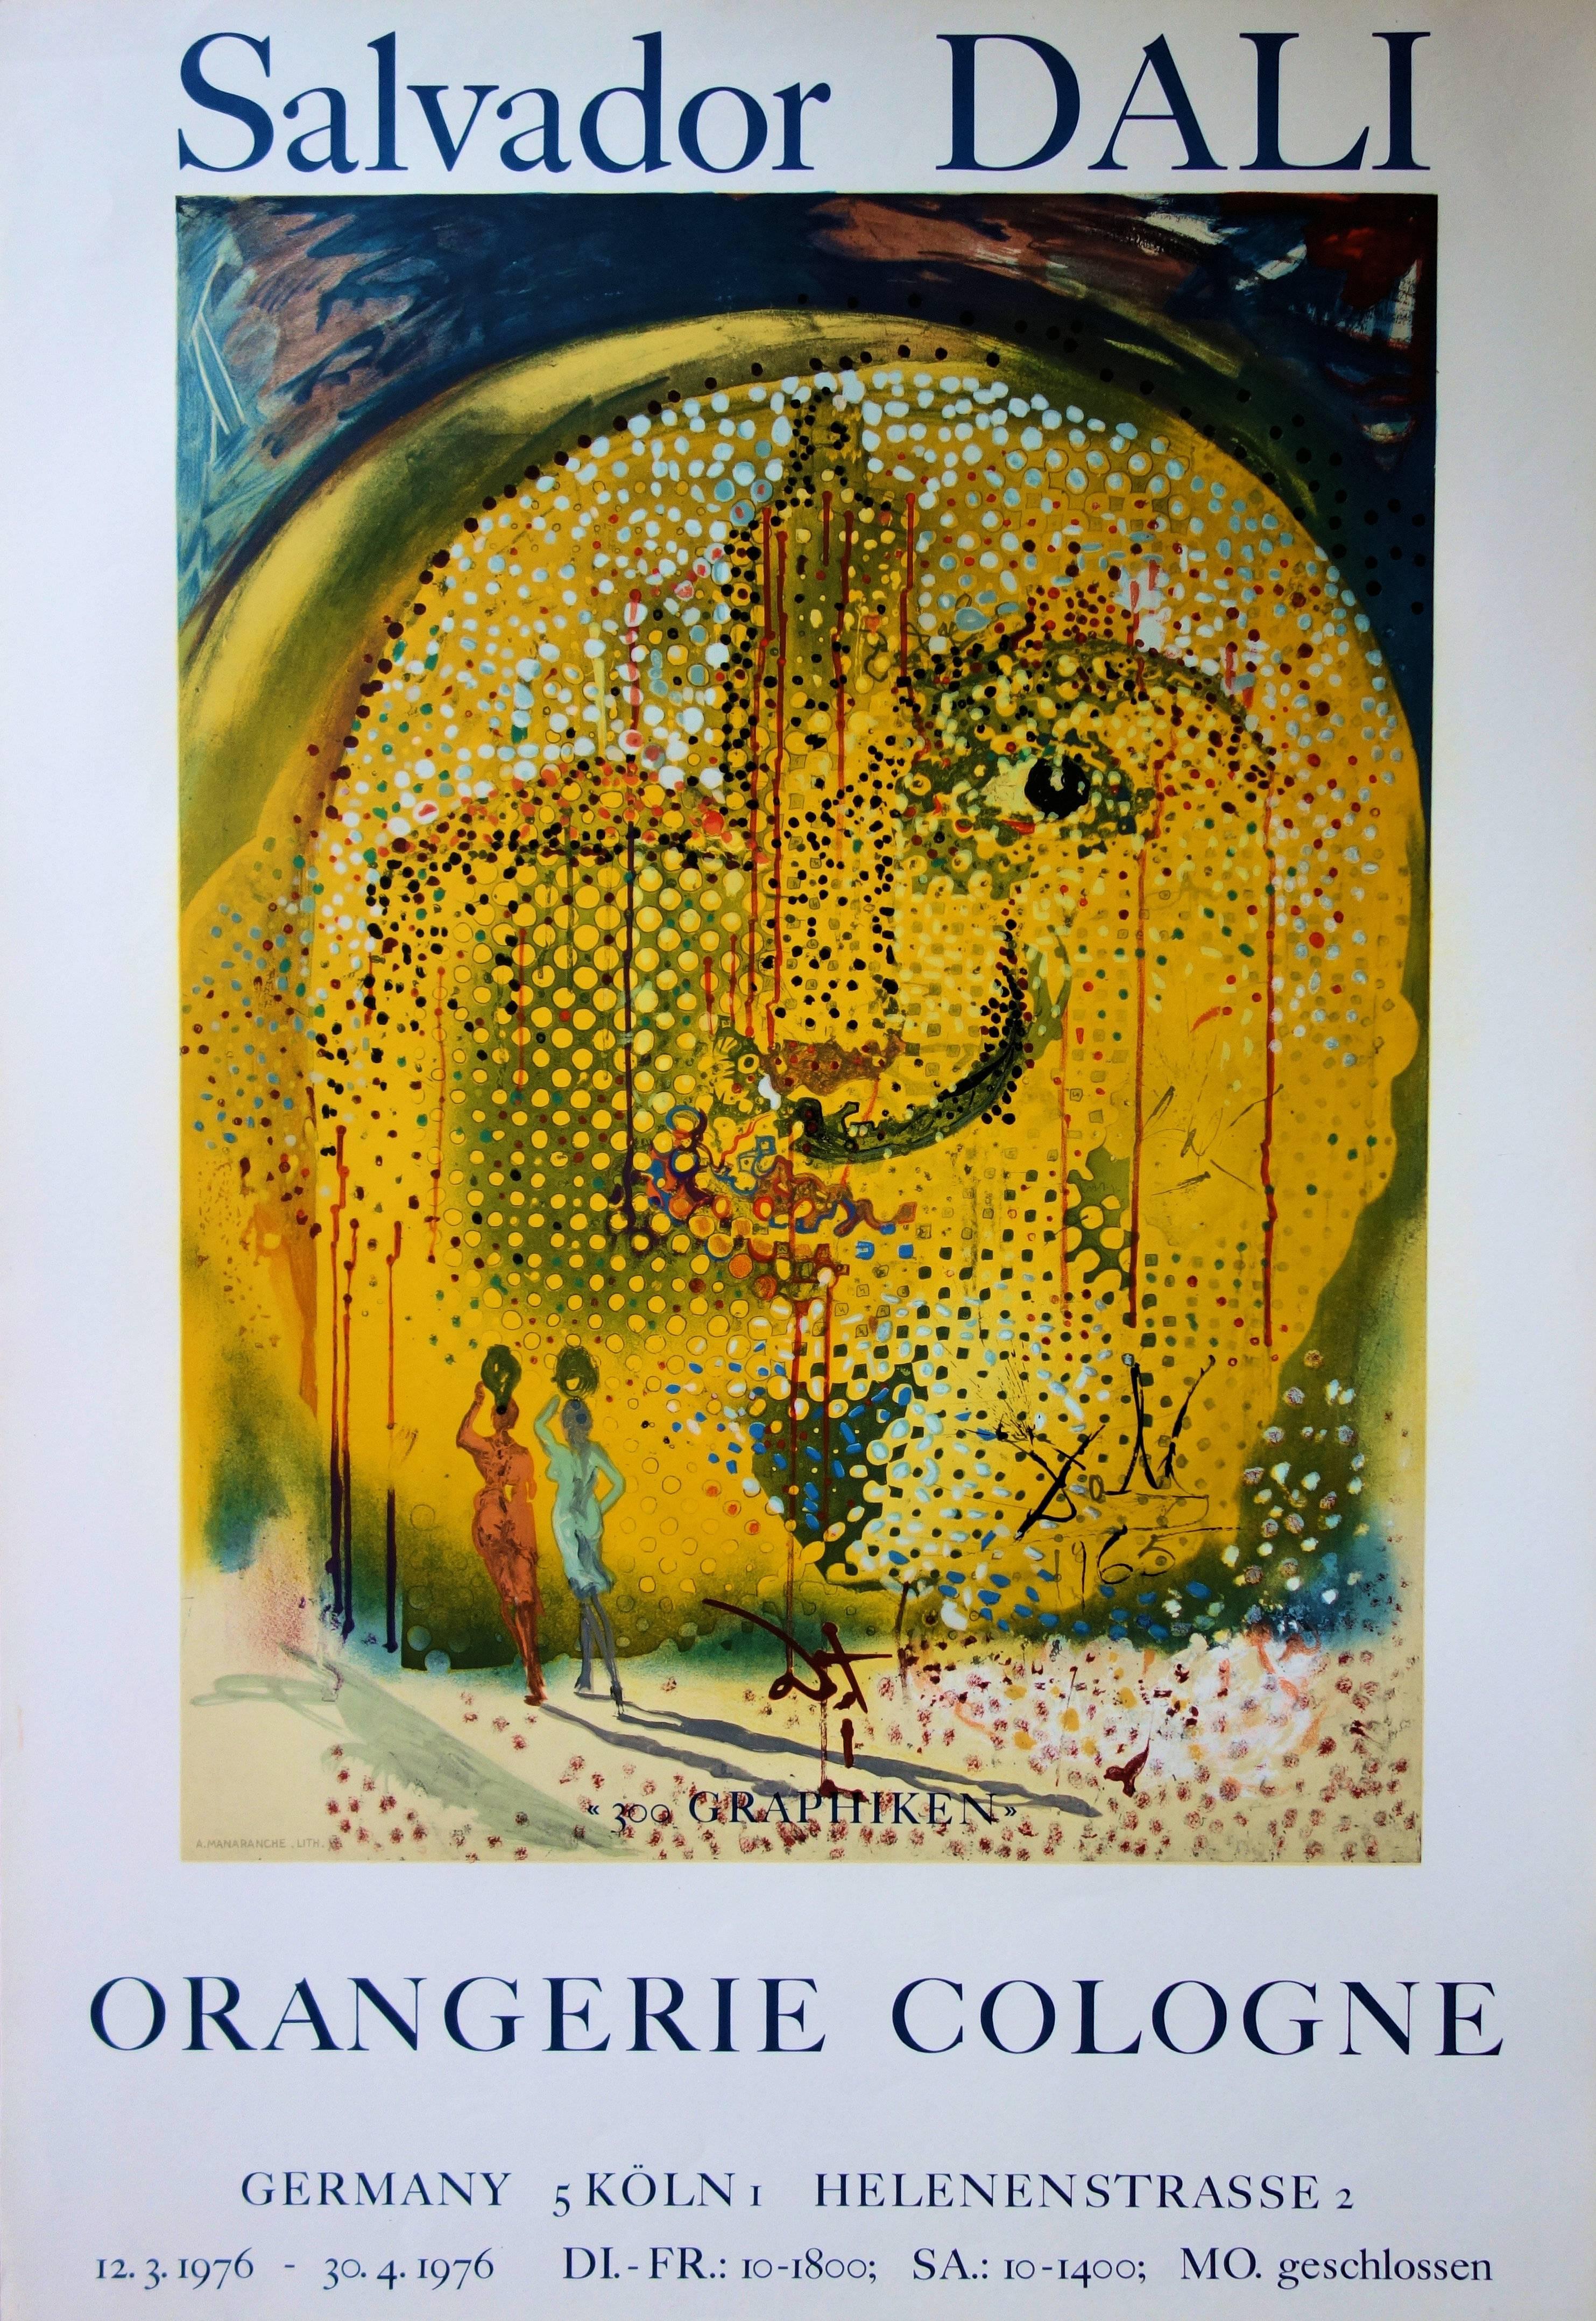 (after) Salvador Dali Figurative Print – Sol y Dali - Seltene Vintage-Lithographie Poster - Mourlot 1967 (Gehaltsnummer 67-1)